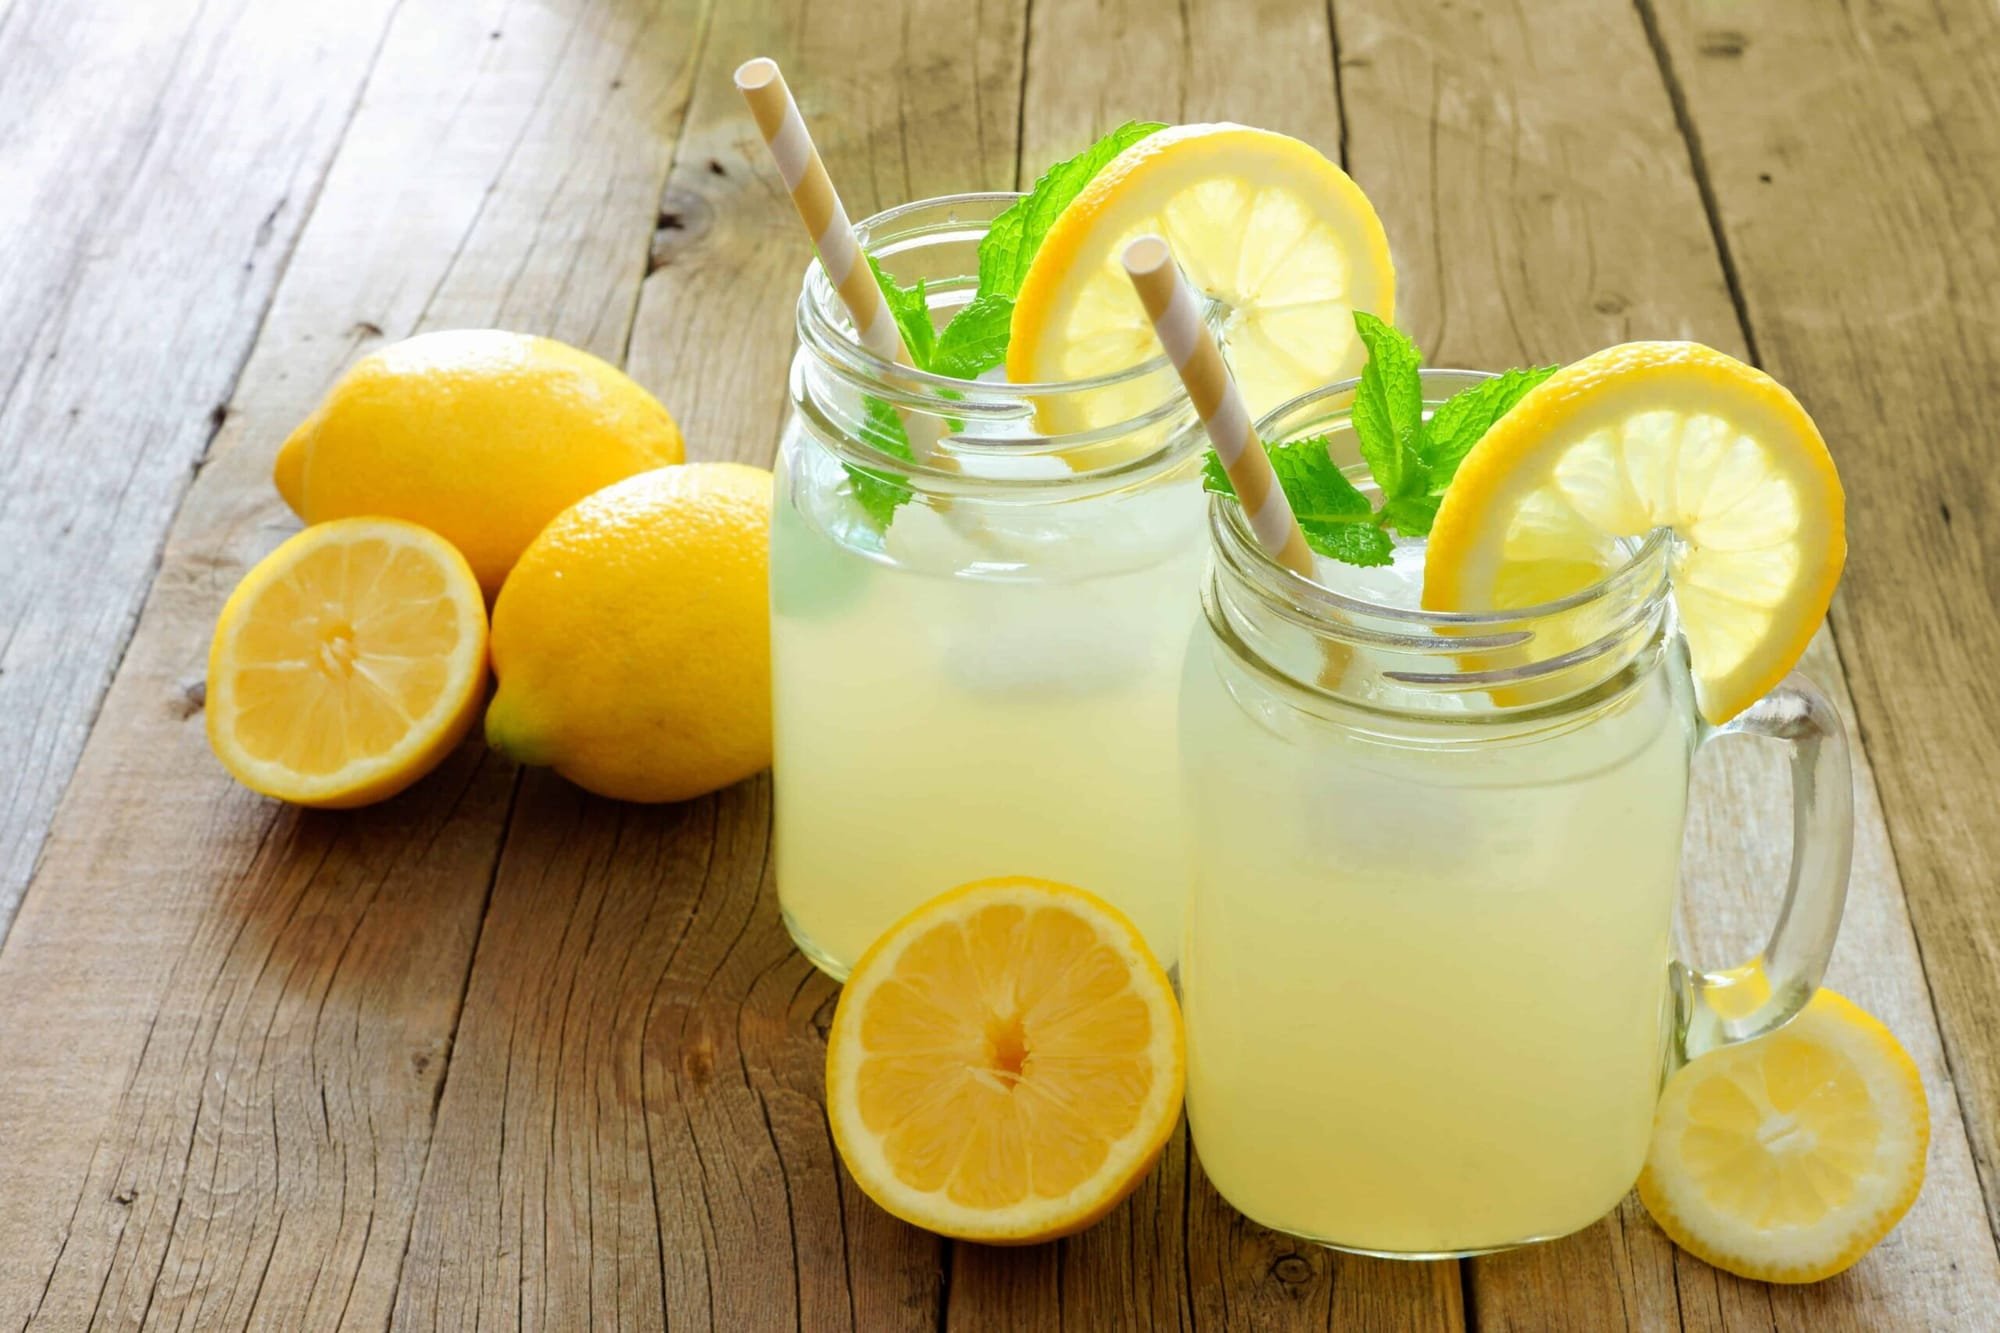 خمس فوائد "غير معروفة" لعصير الليمون يمكنها تحسين صحتنا